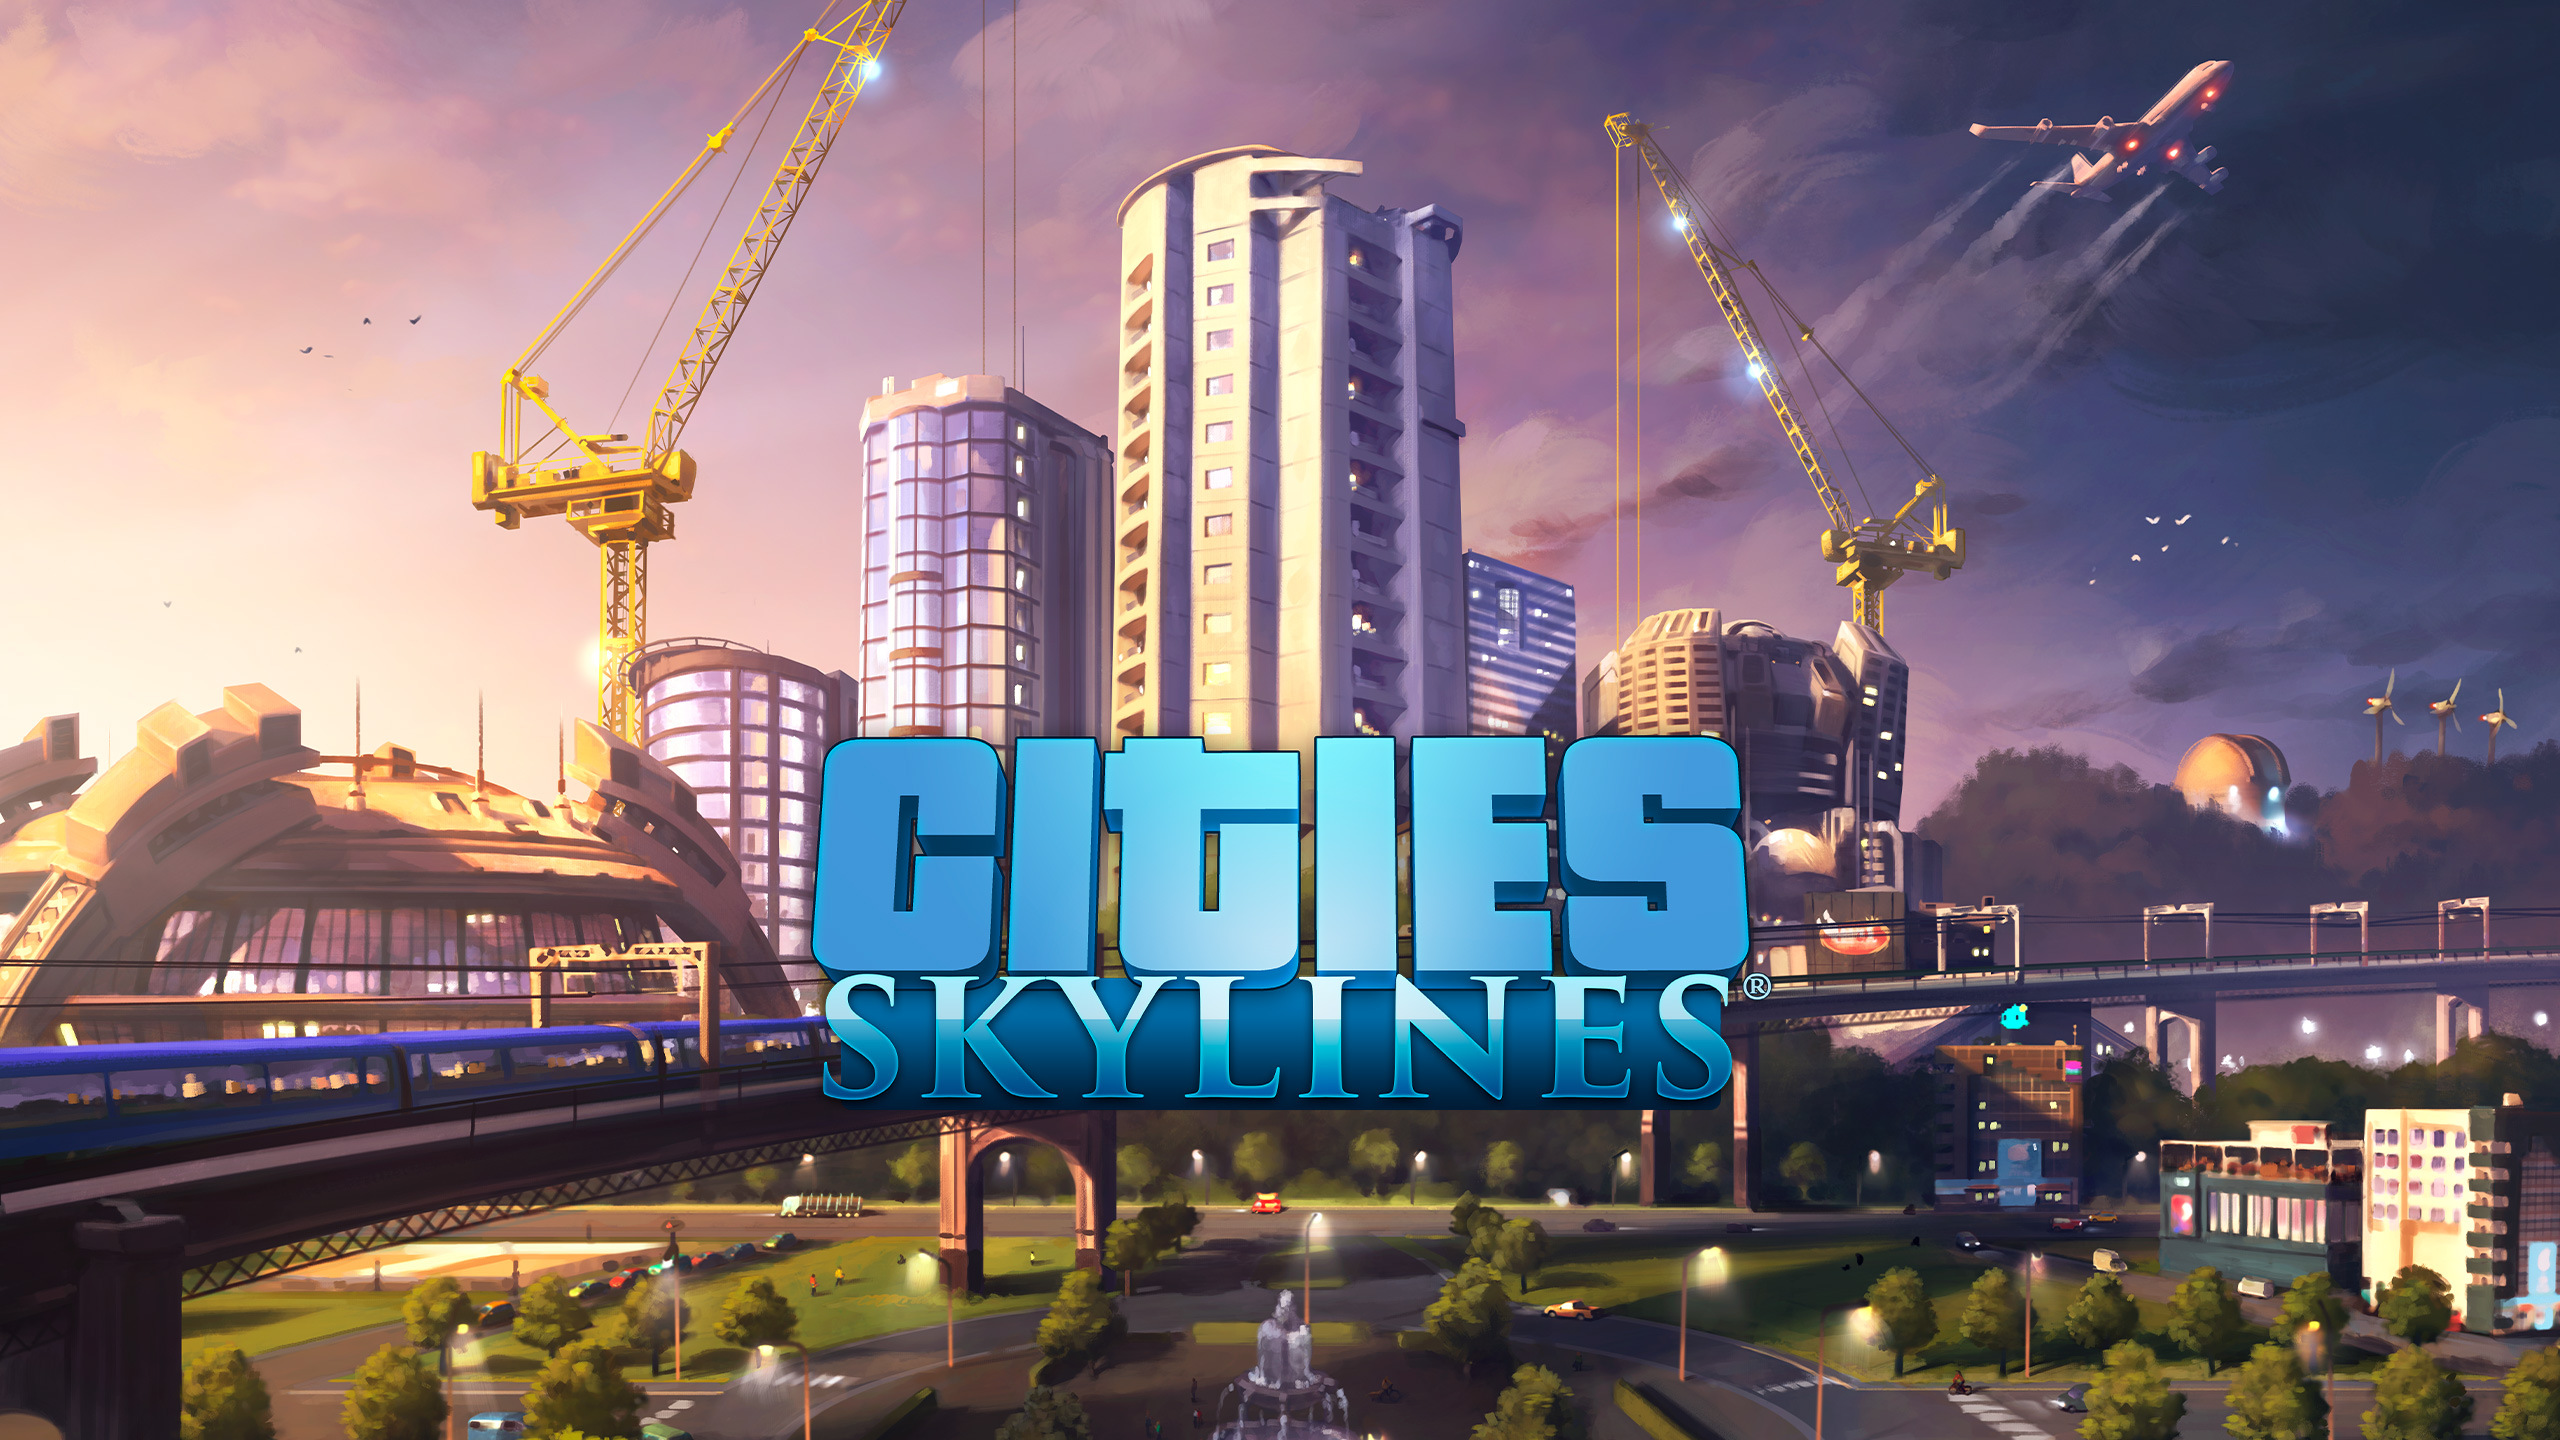 CittàSkylines